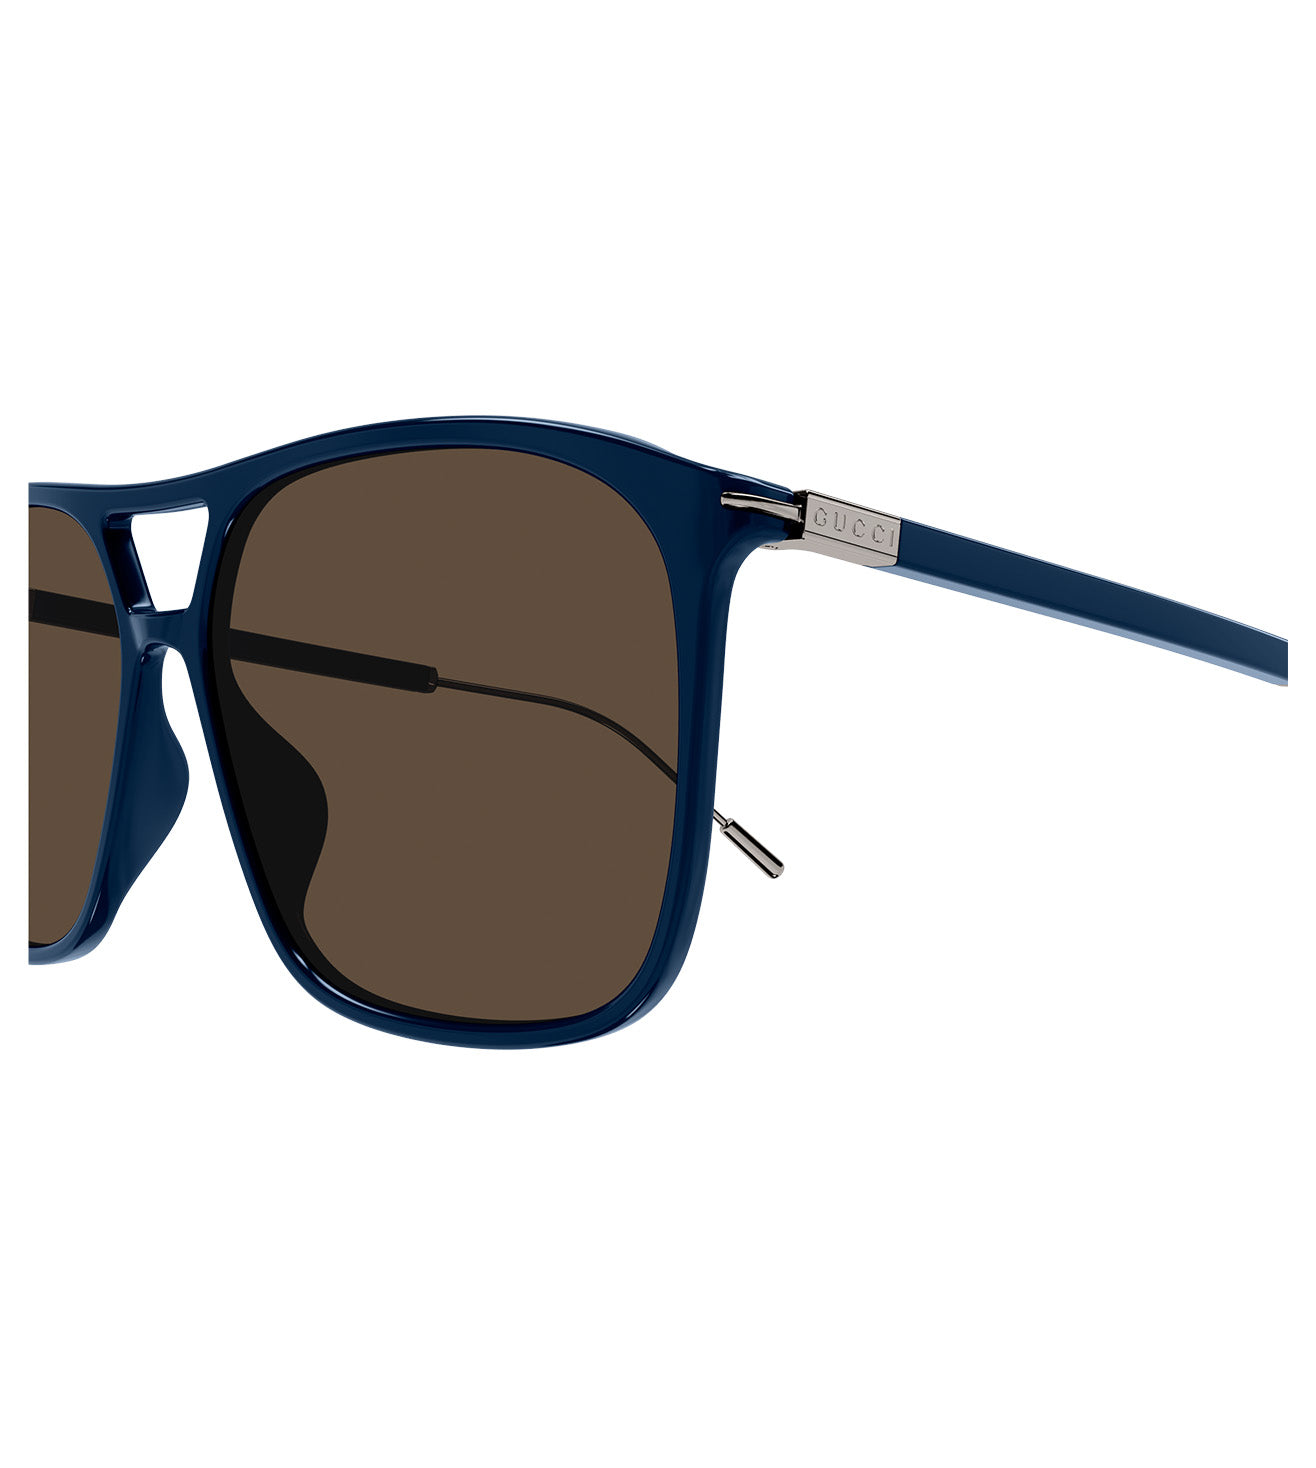 Gucci Men's Brown Square Sunglasses